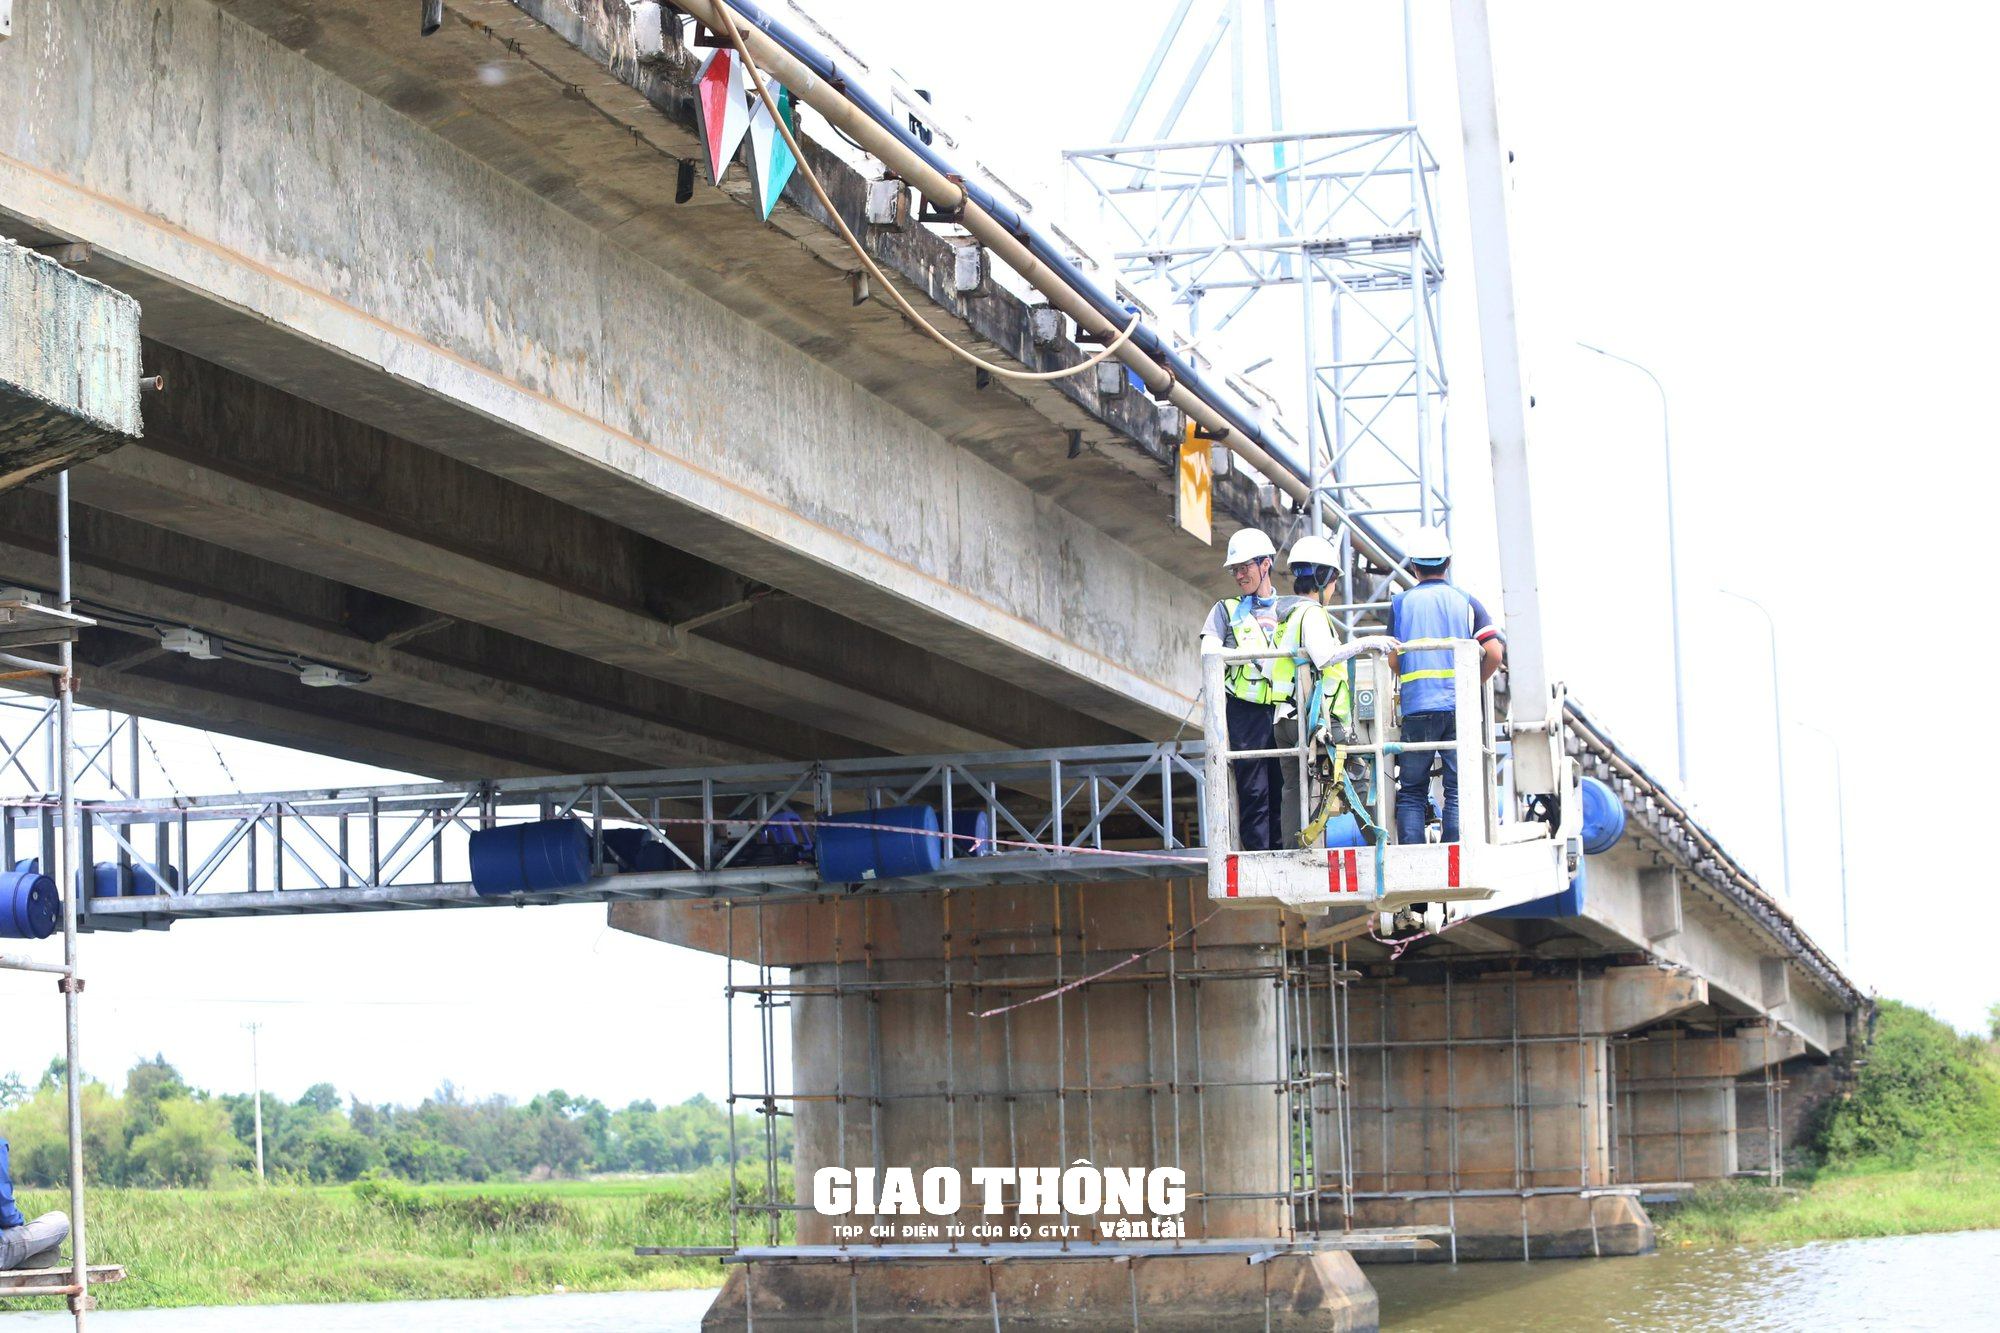 Lắp đặt các thiết bị thông minh từ Hàn Quốc trên hai cây cầu ở Quảng Nam - Ảnh 3.